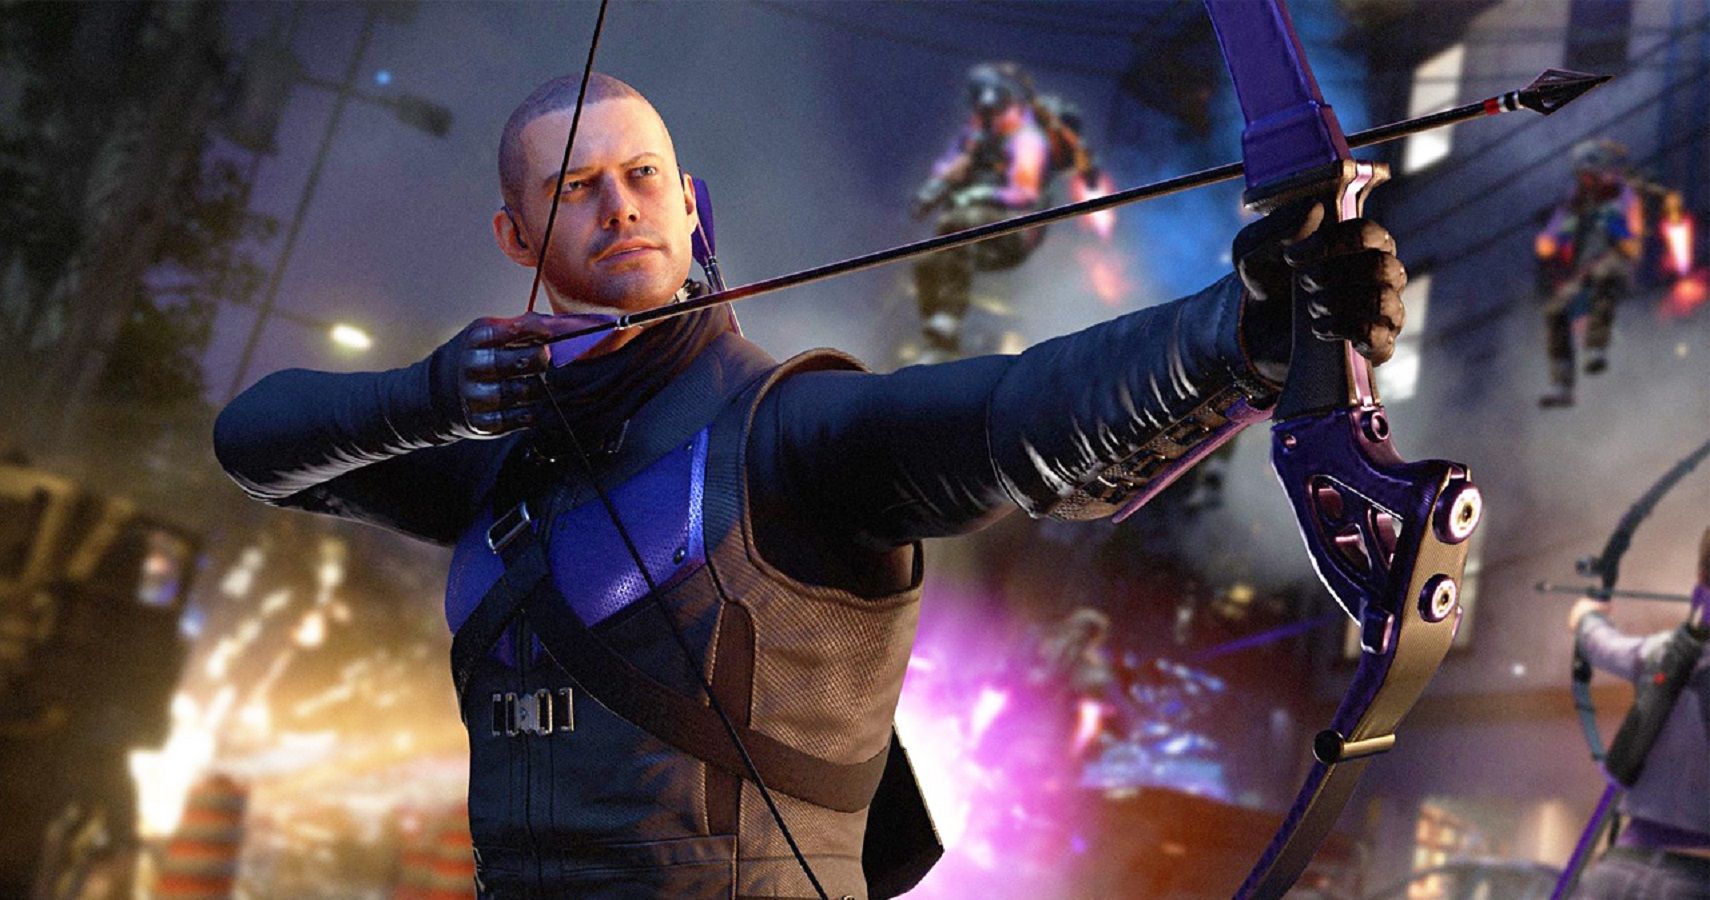 Hawkeye in Avengers game